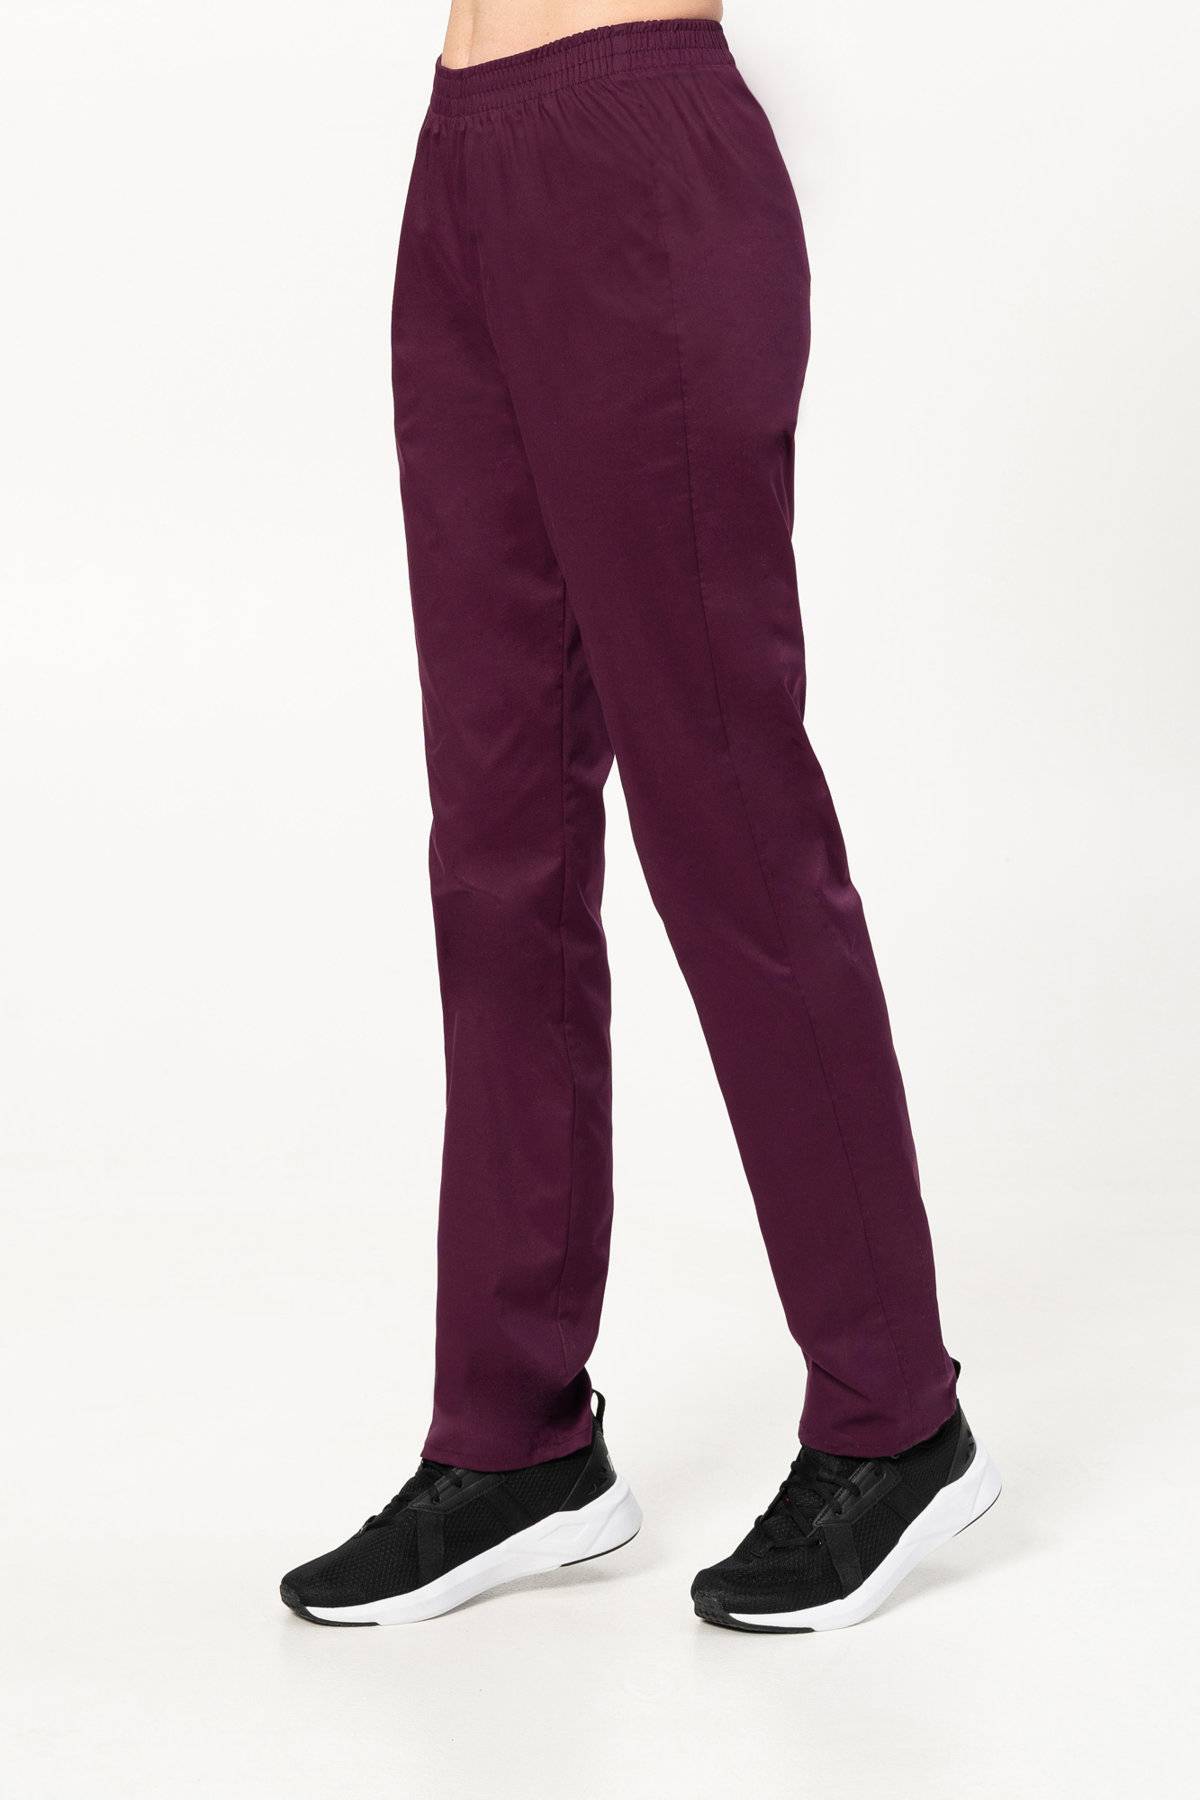 Spodnie medyczne STRETCH, z gumą w pasie (SE7) 5 kolorów